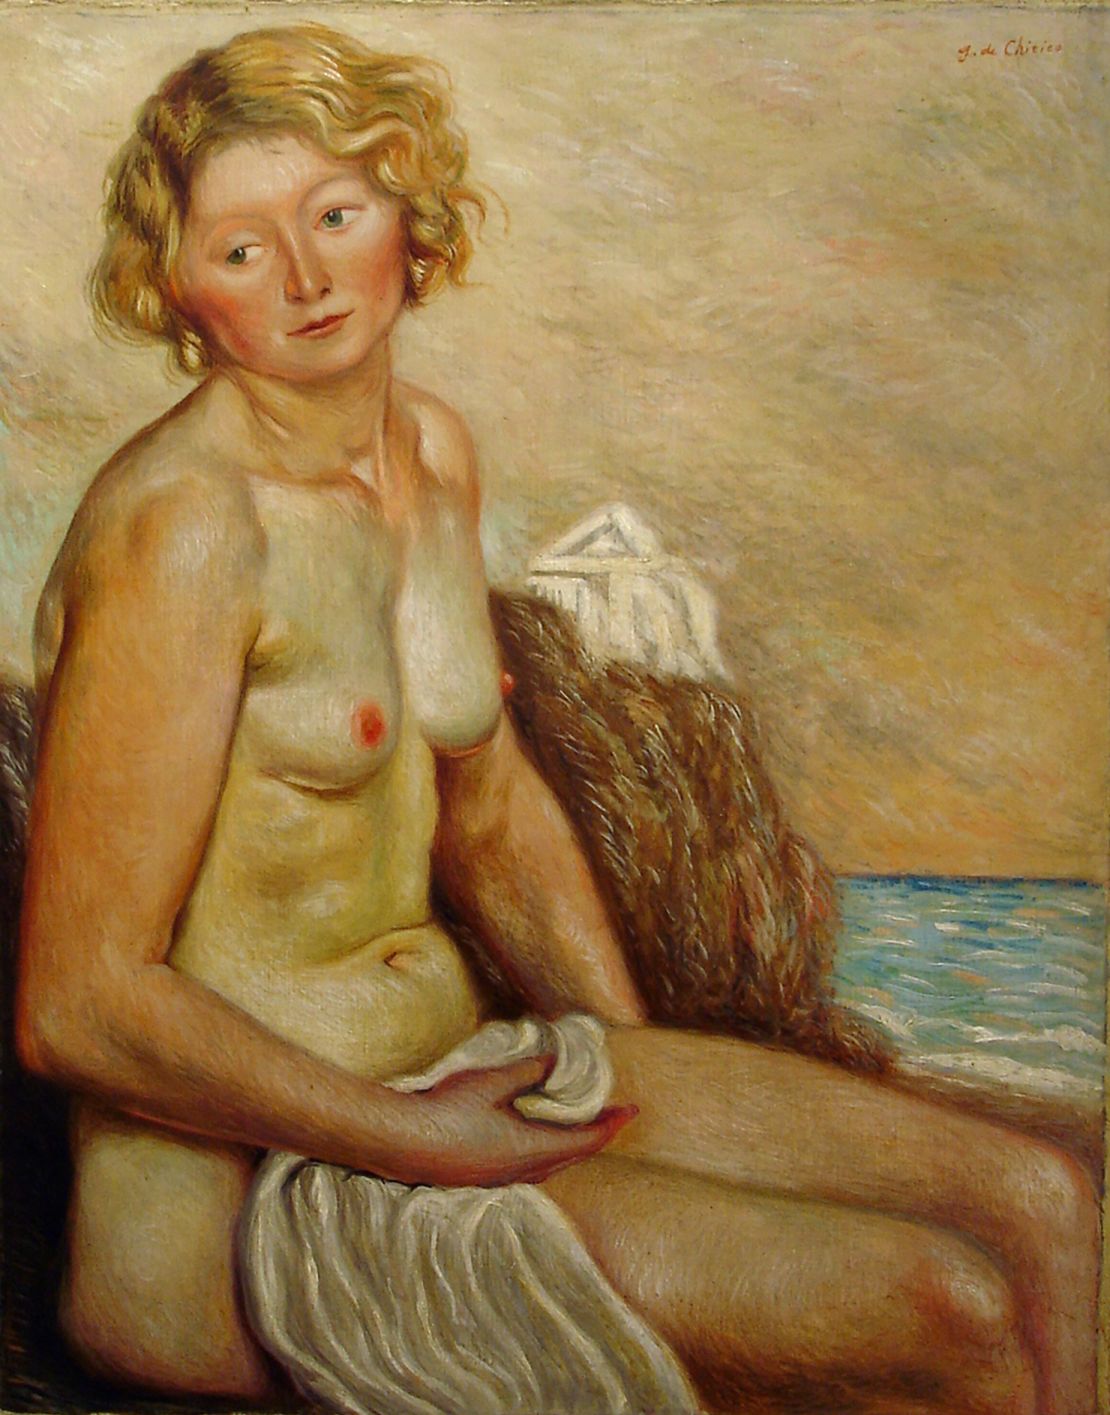 Giorgio de Chirico "Nudo di donna," 1930